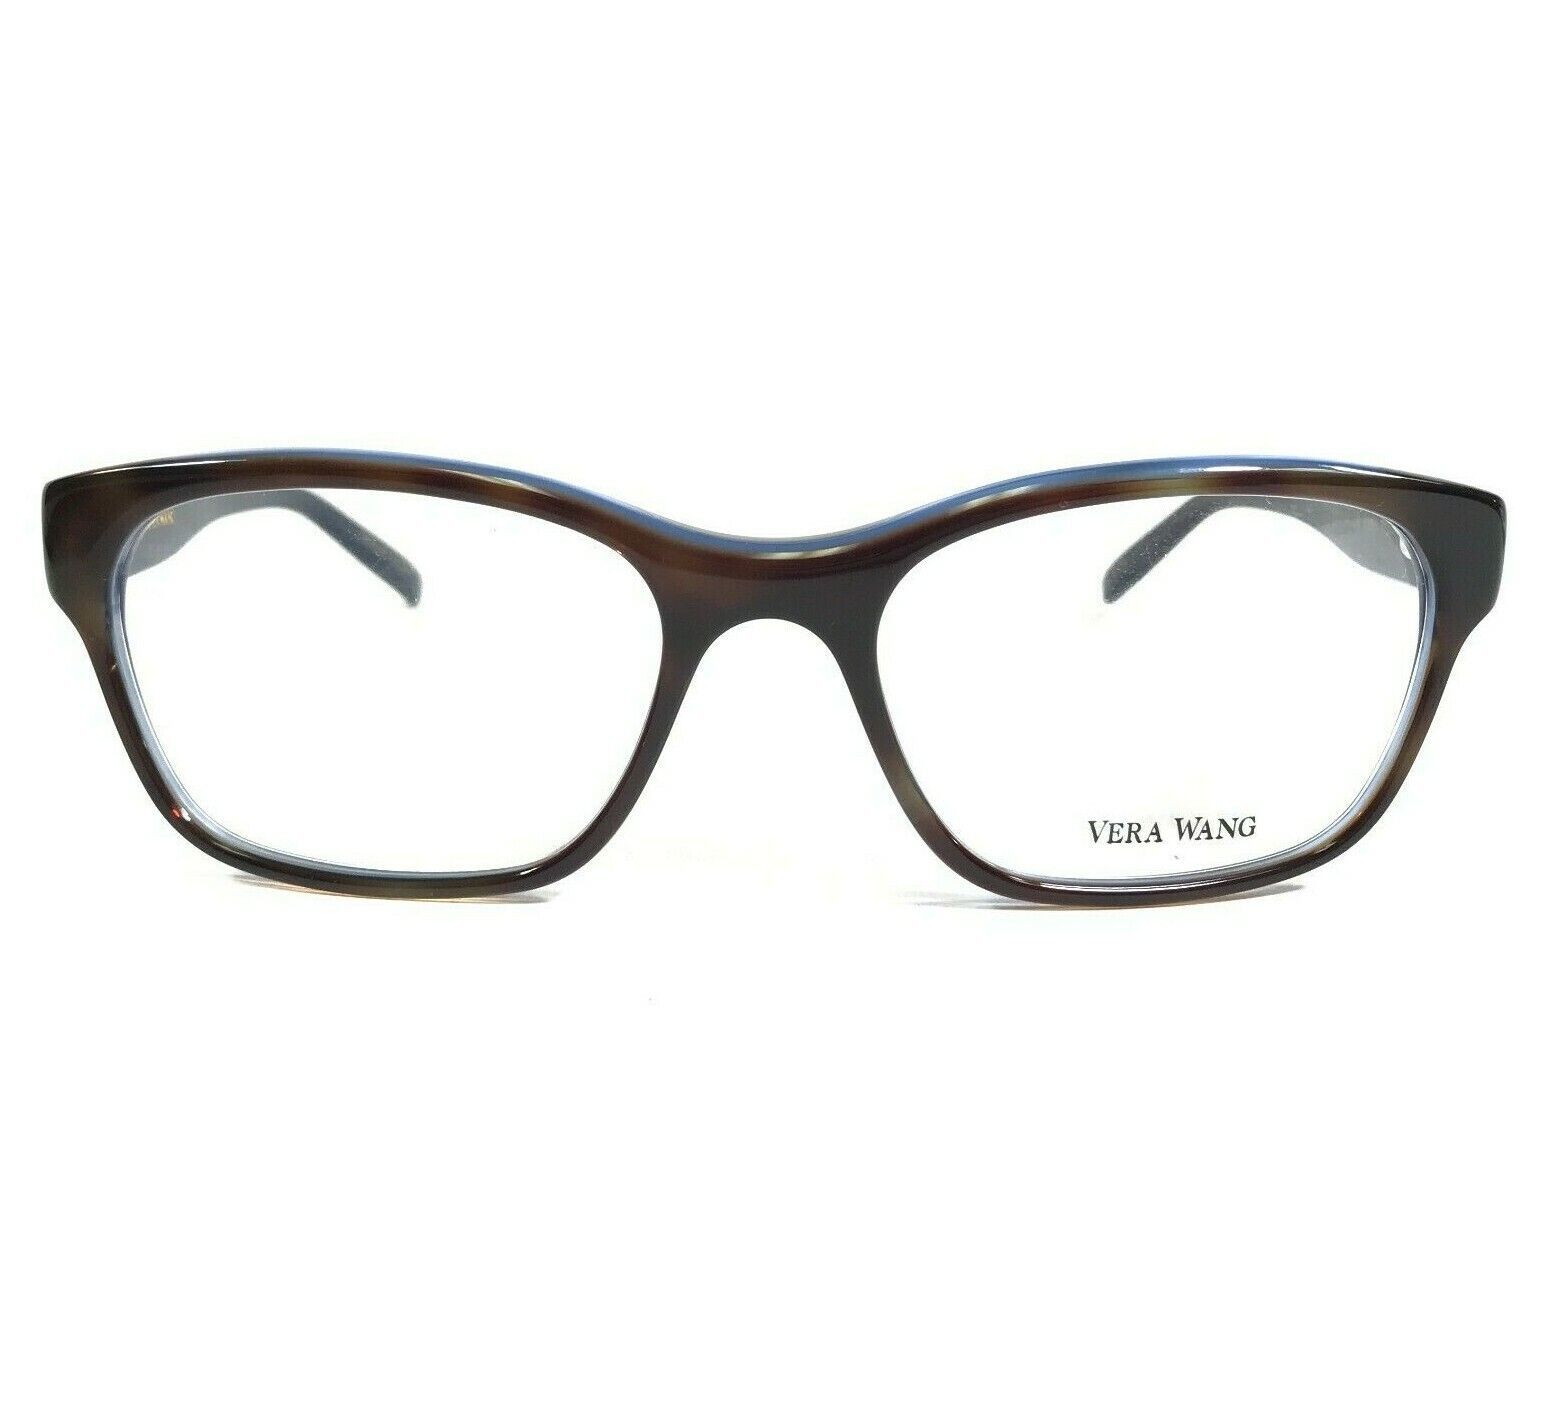 Vera Wang Eyeglasses Frames V901 TO Blue Tortoise Cat Eye Full Rim 52-18-135 - $55.89